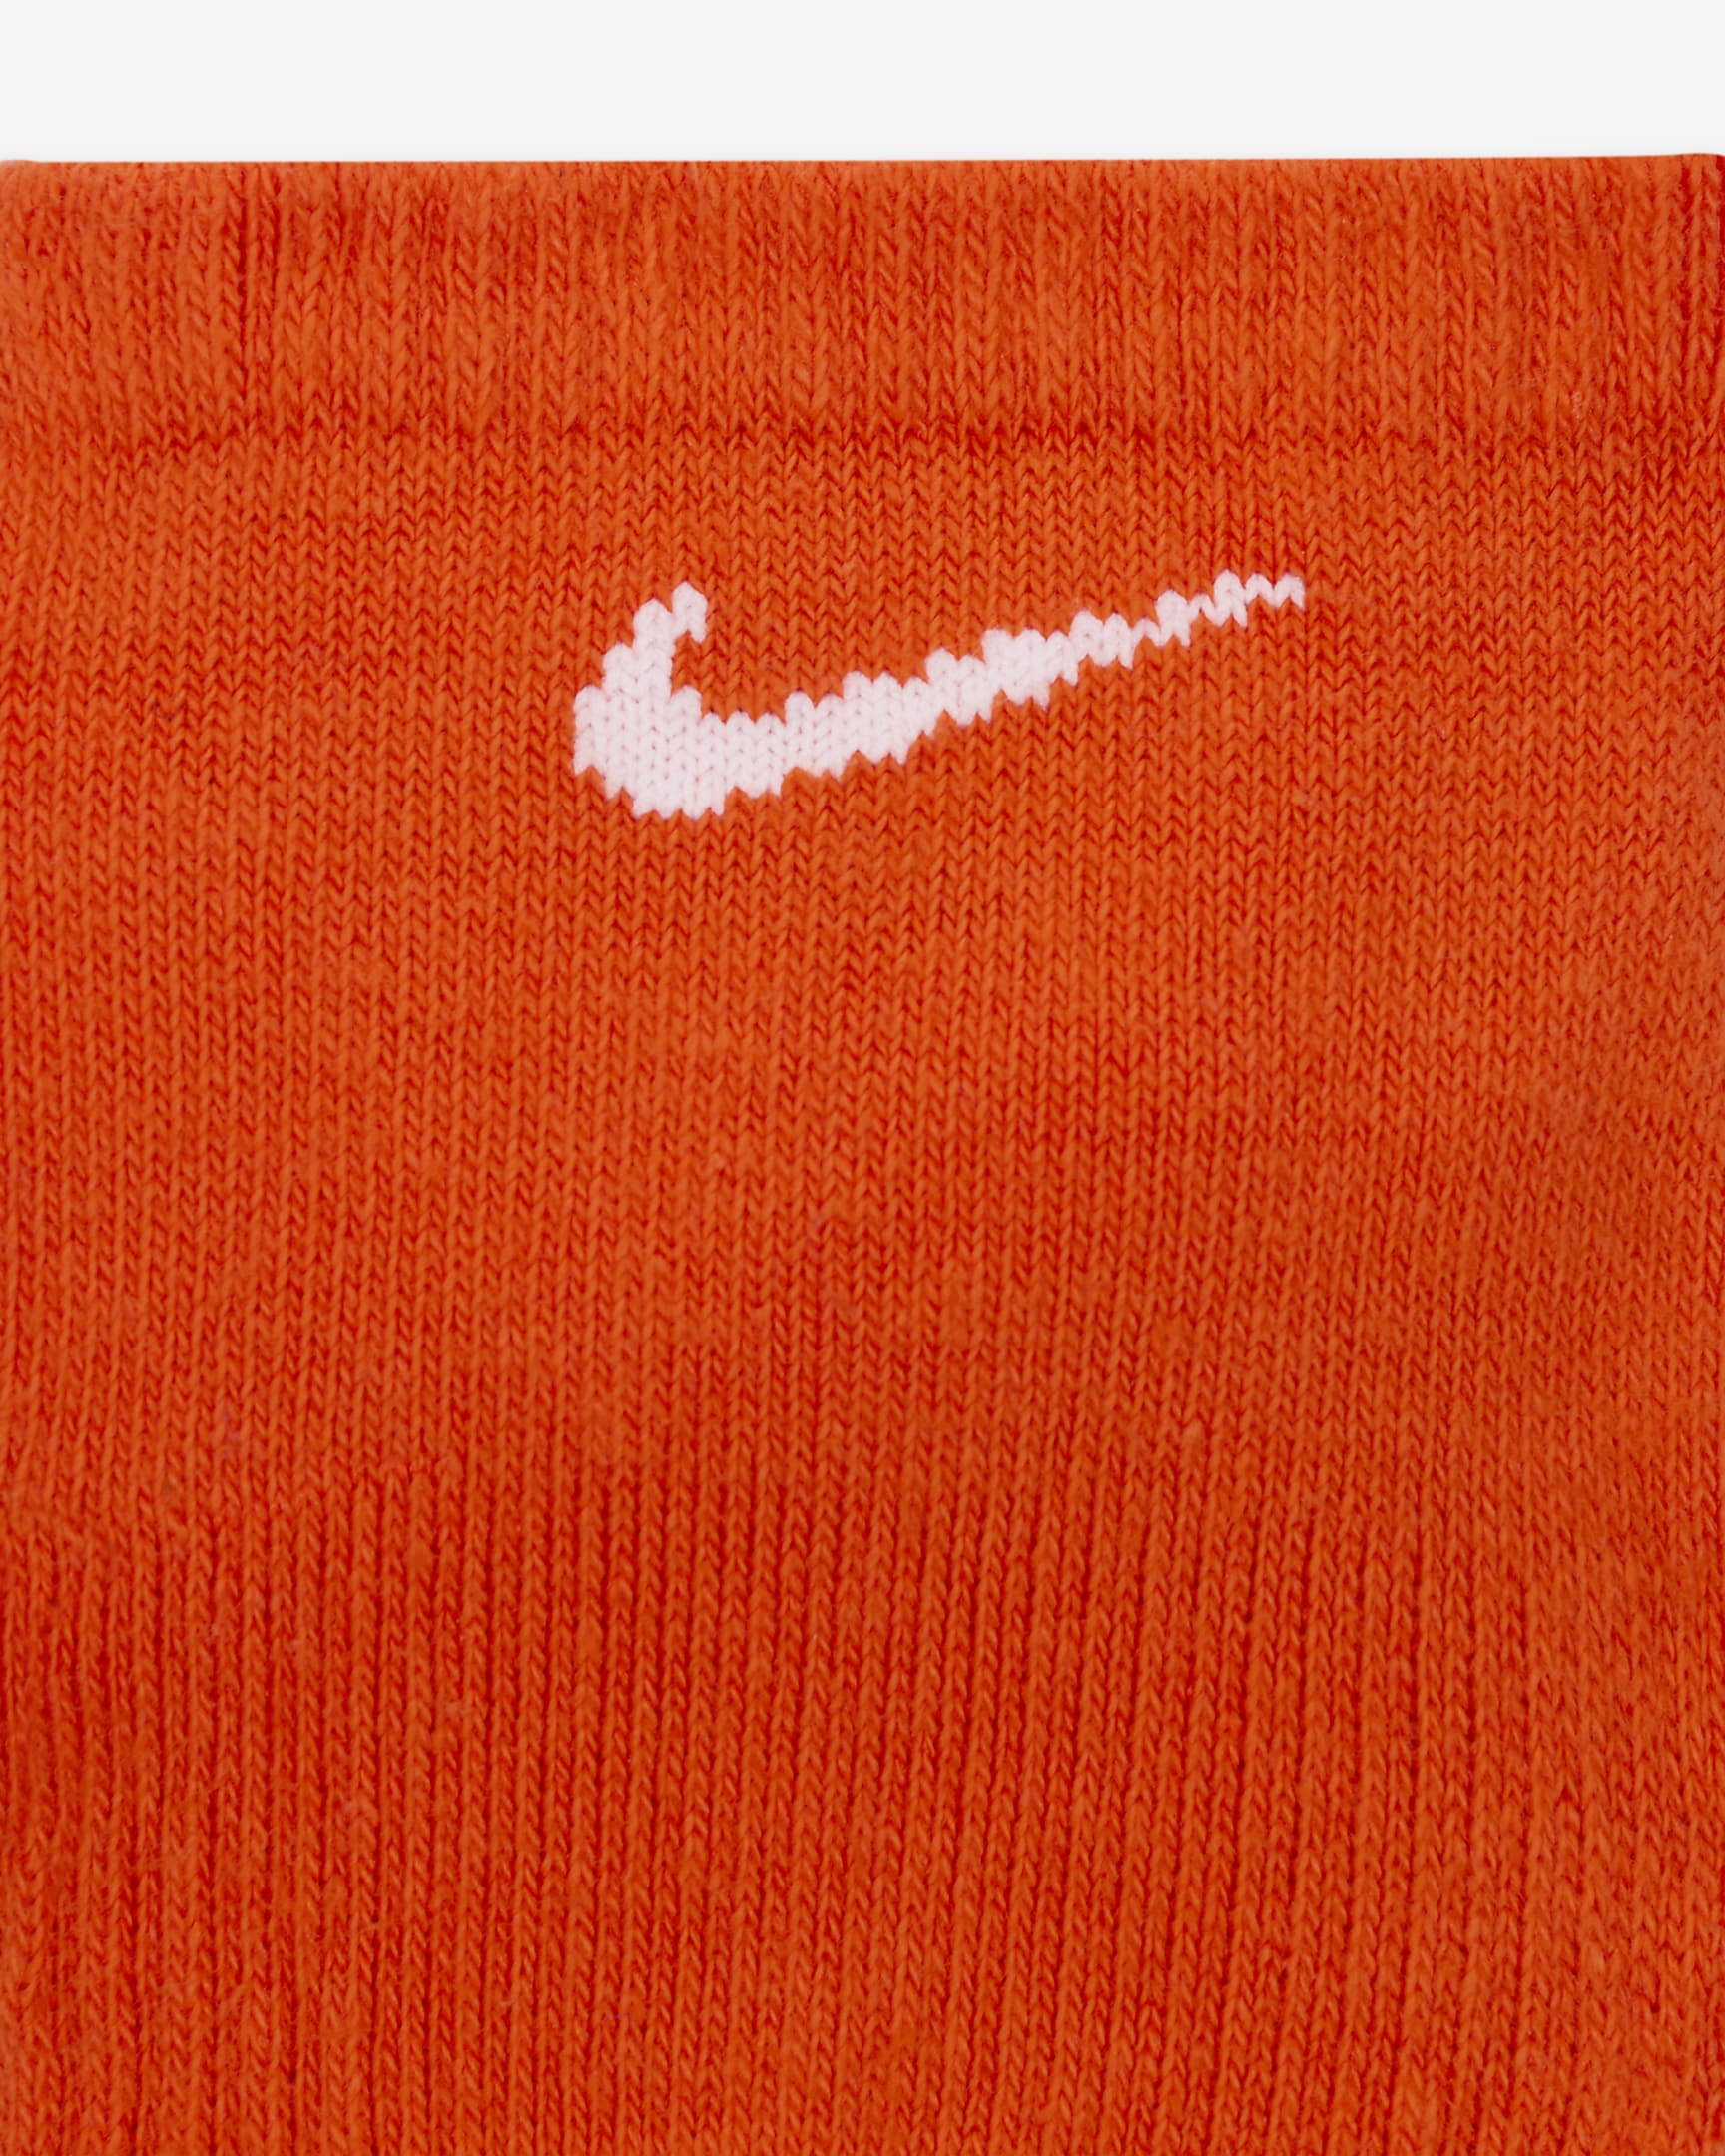 Nike Everyday Plus Cushion Training No-Show Socks (3 Pairs). Nike.com